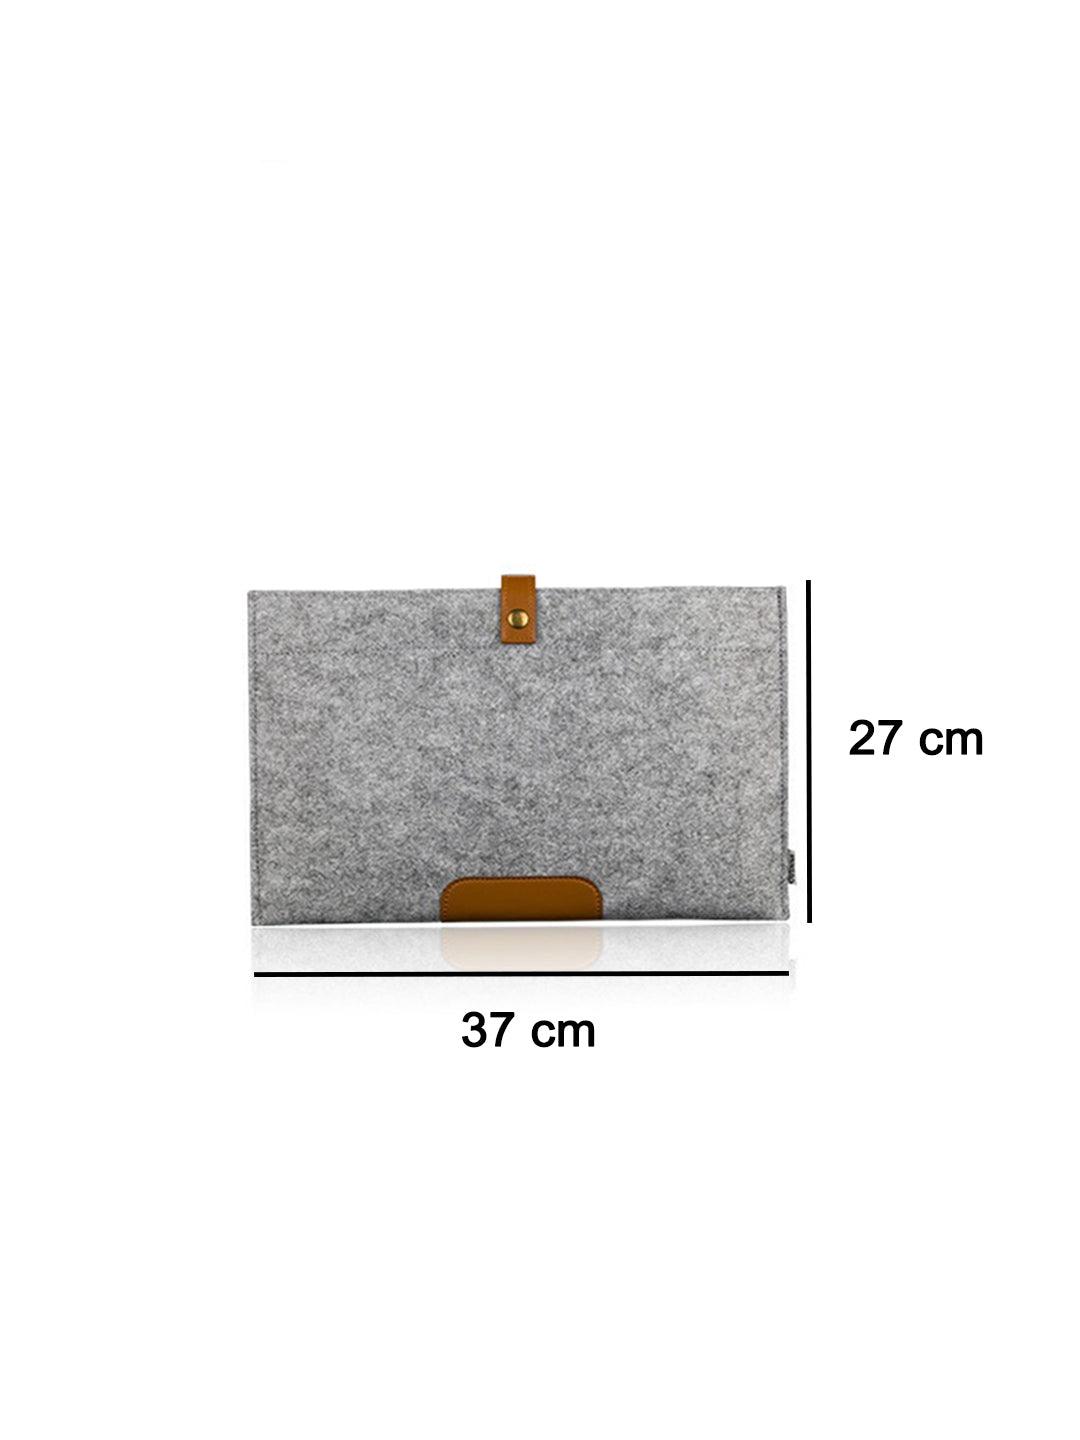 Market99 Rectangular Felt Laptop Bag - MARKET 99